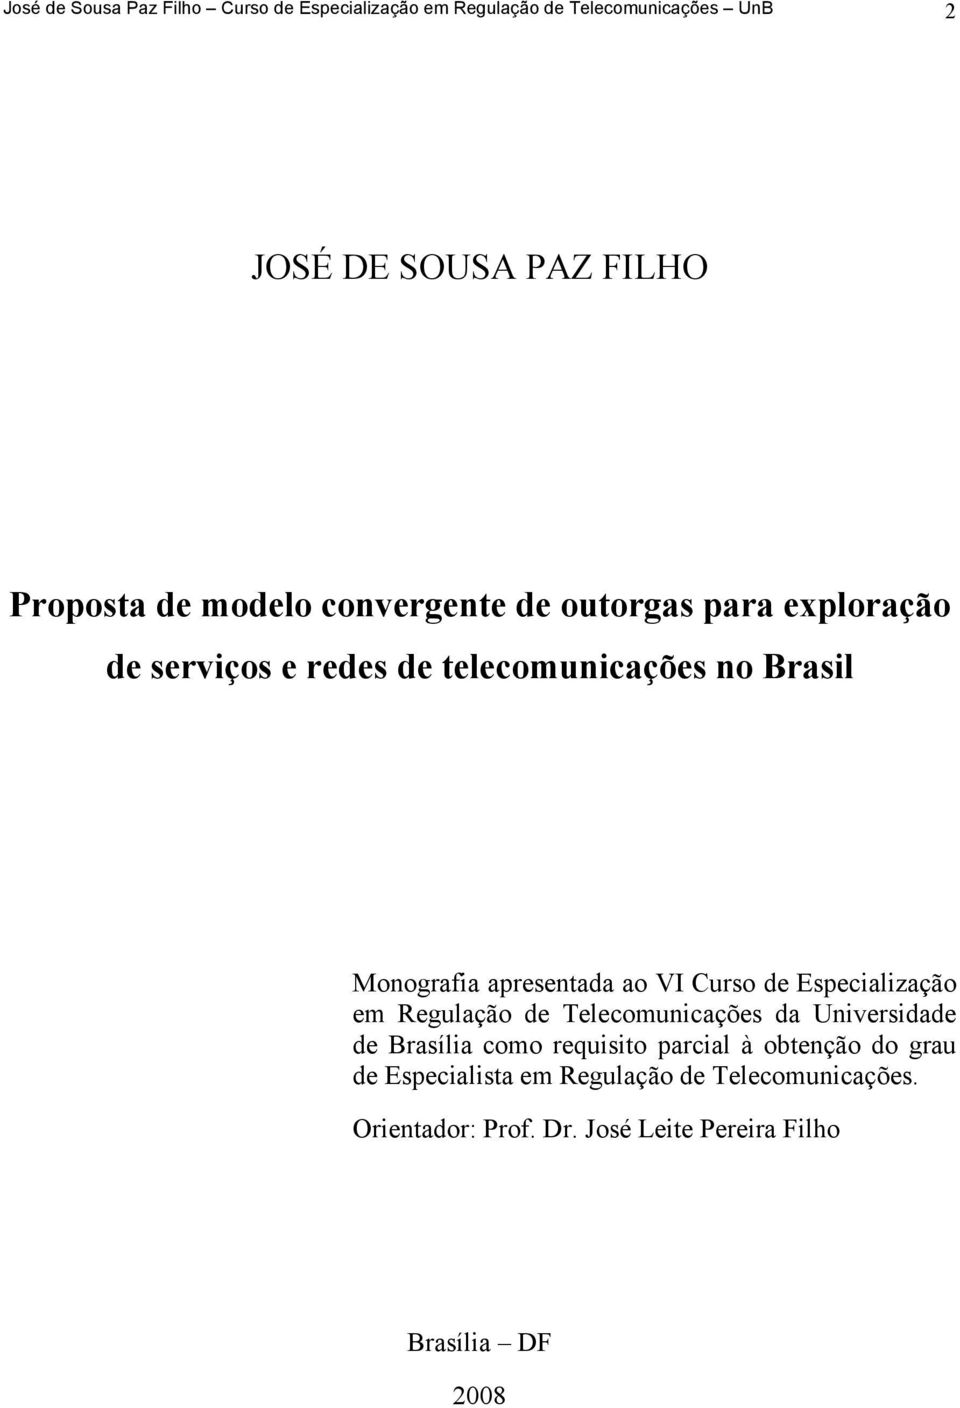 VI Curso de Especialização em Regulação de Telecomunicações da Universidade de Brasília como requisito parcial à obtenção